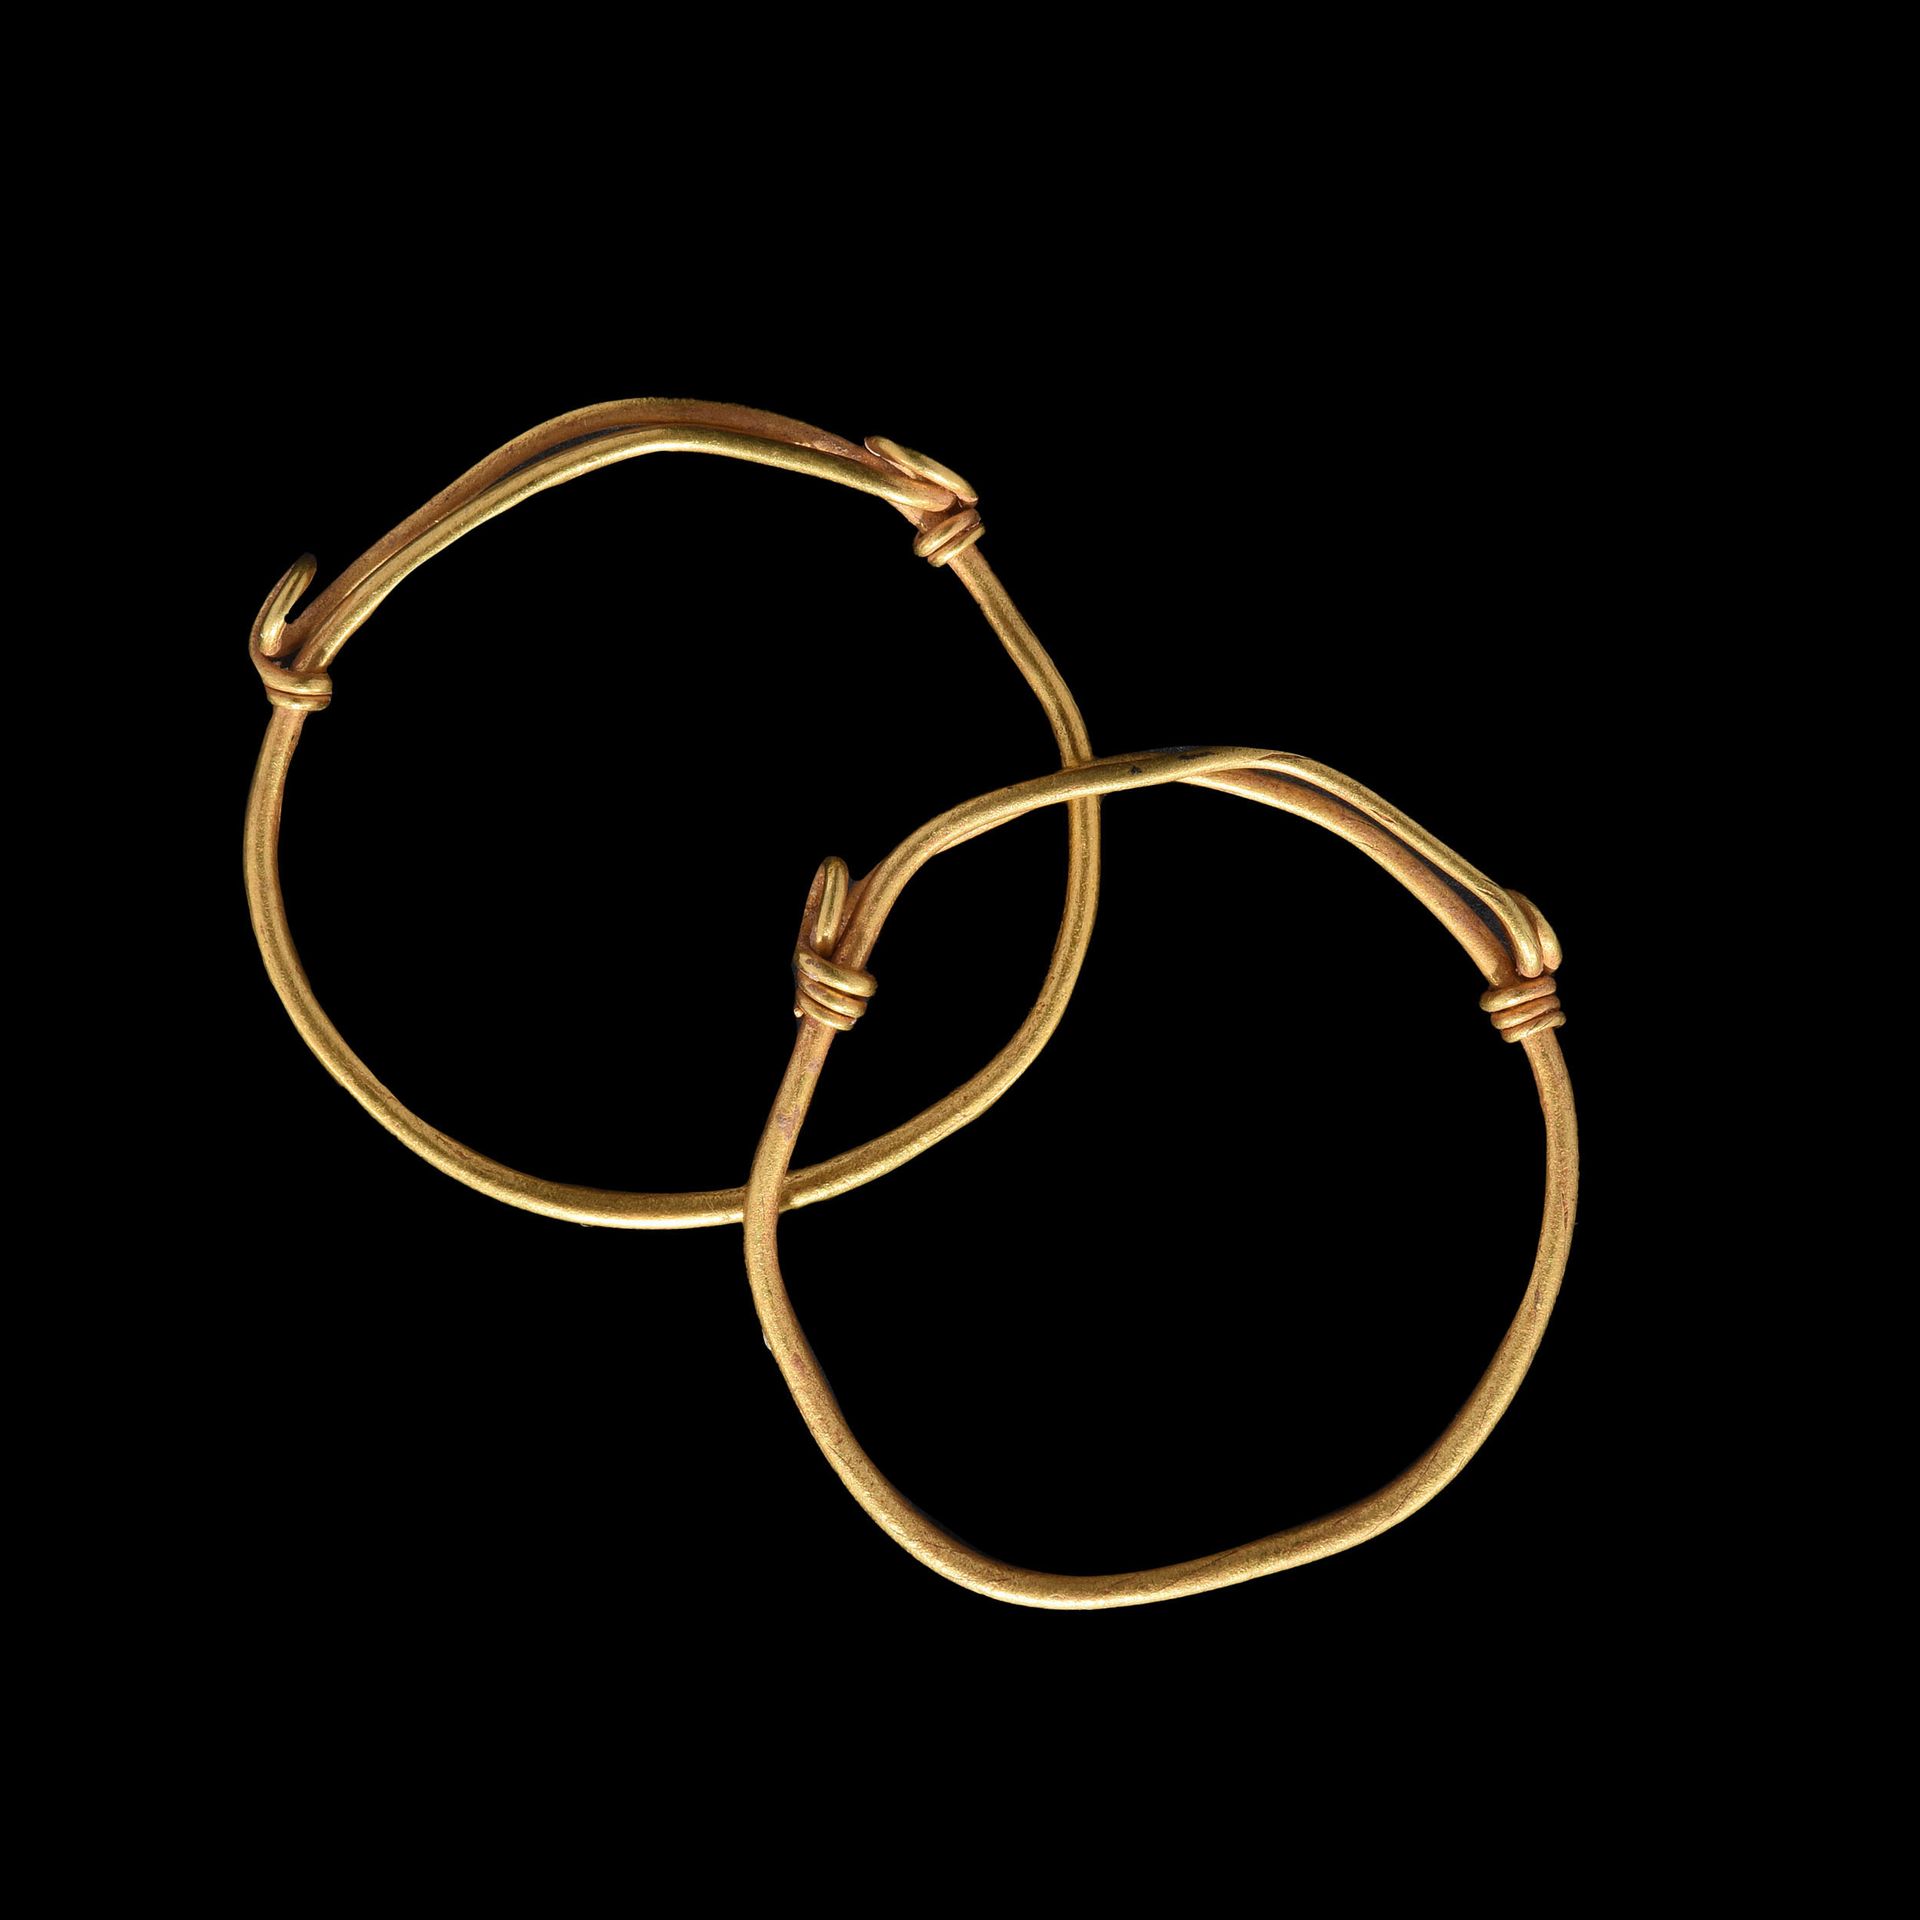 Null 一对儿童手链

1-2世纪的罗马艺术。

黄金，由一个单环组成，两端较薄，分别缠绕在两侧。

直径30毫米；7克



出处

前L先生的私人收藏，列&hellip;